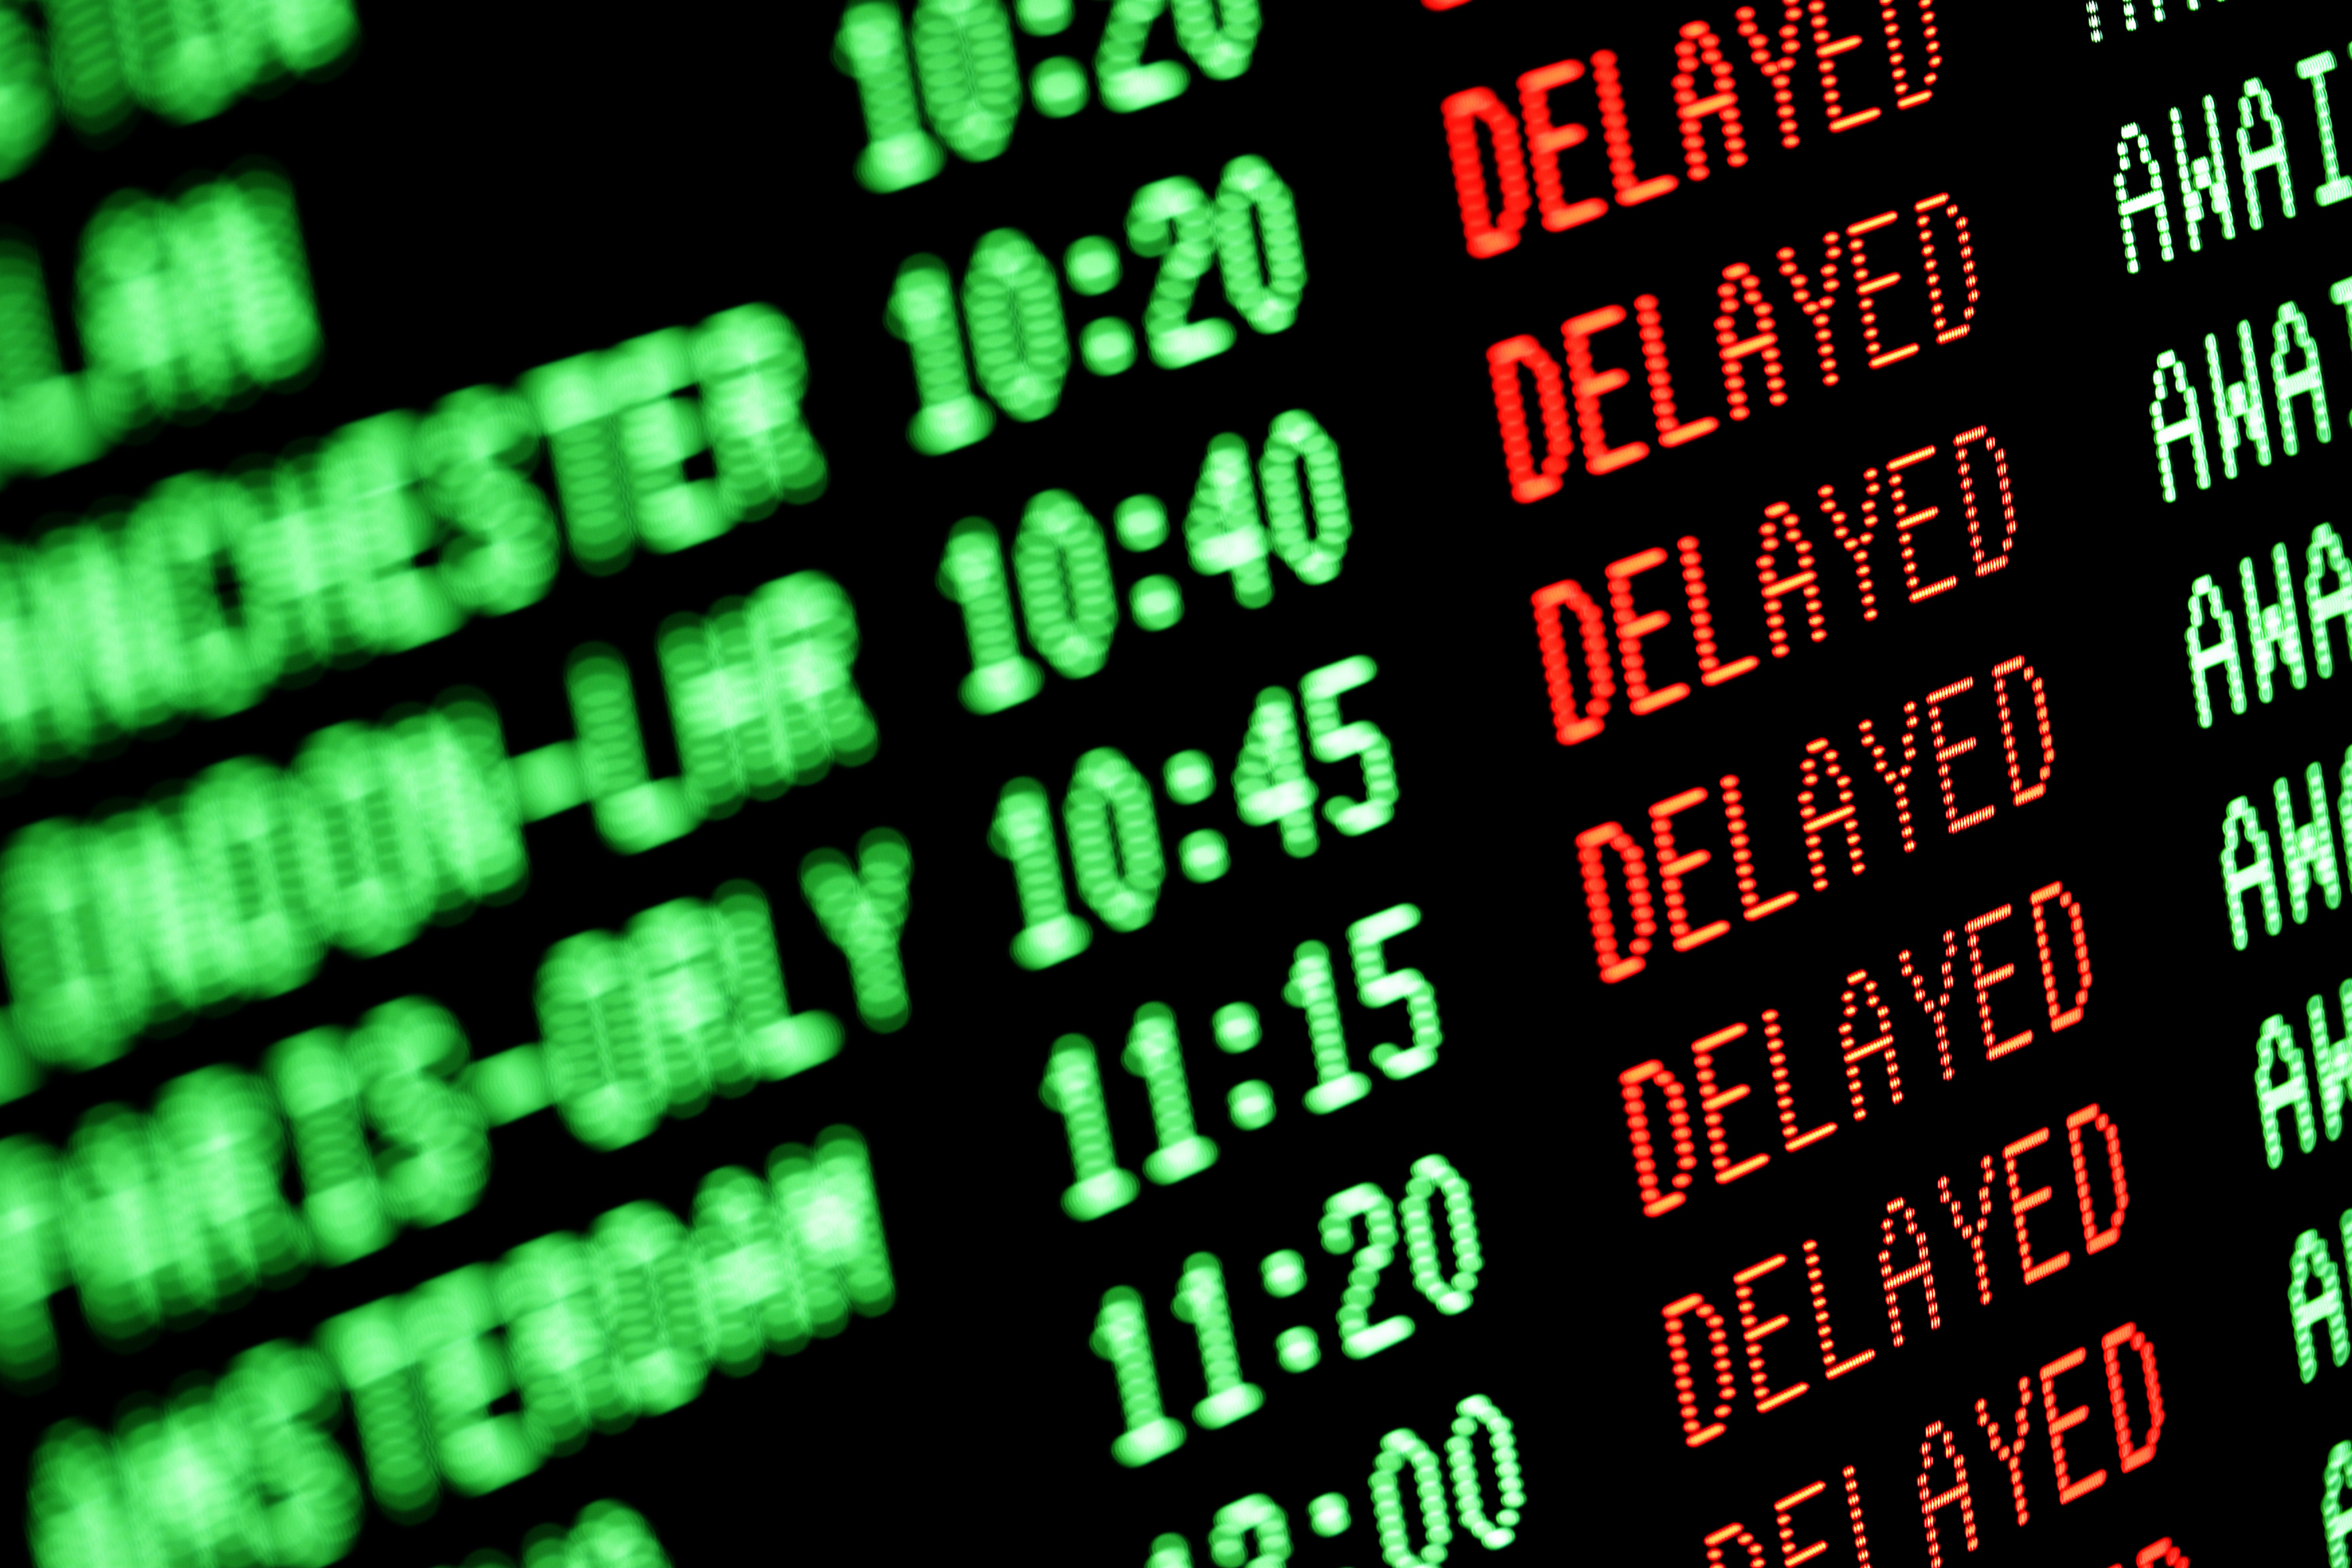 Großaufnahme einer Anzeigetafel vom Flughafen, die die Flugverspätung von mehreren Flügen anzeigt.